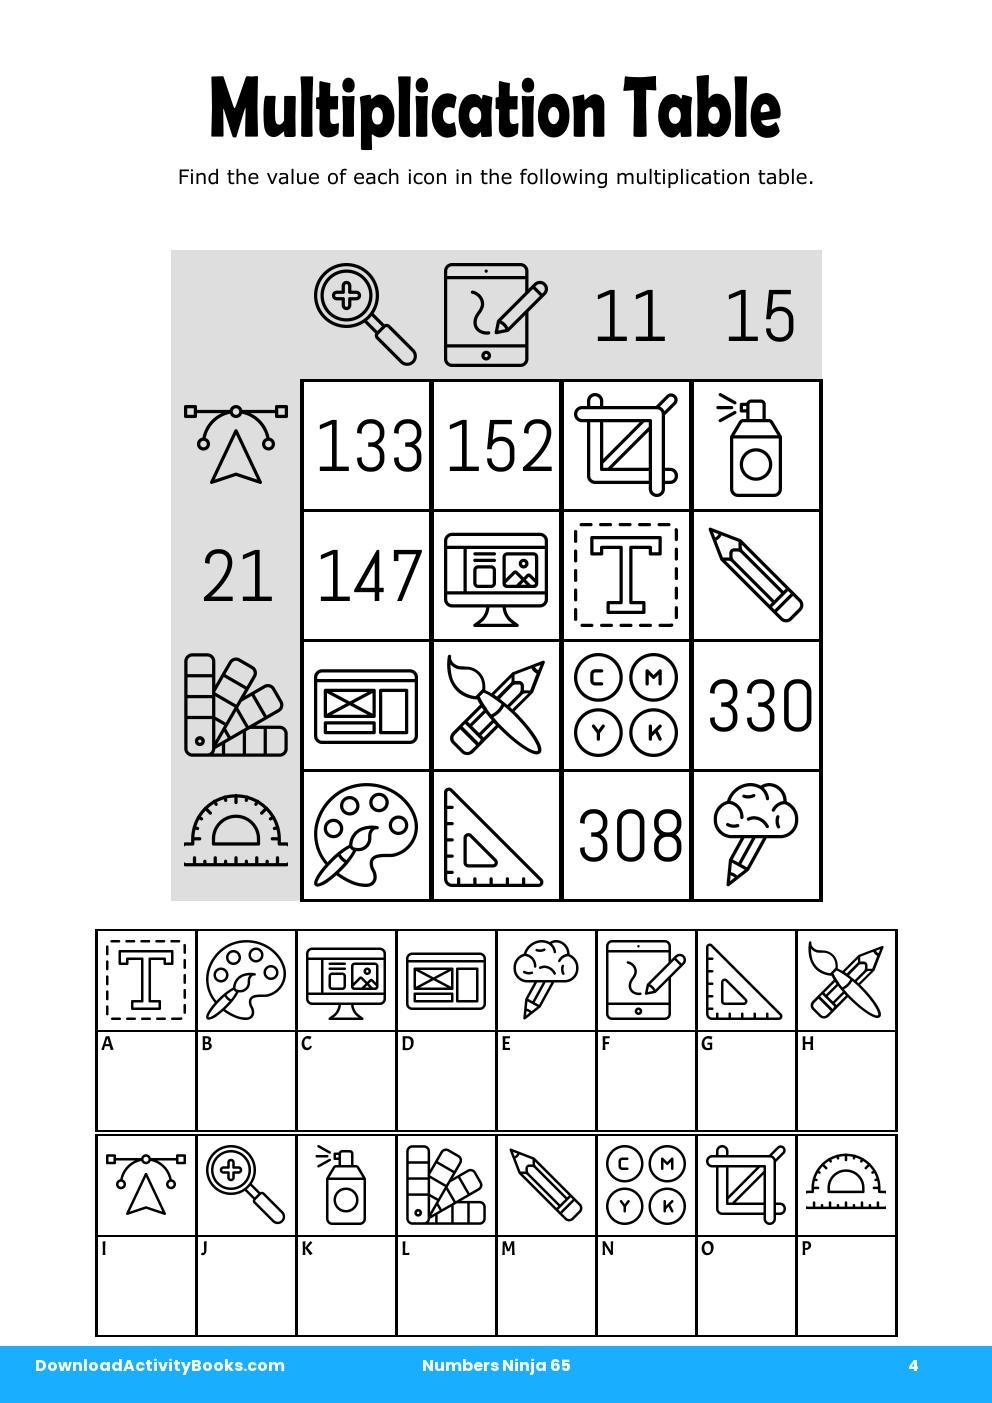 Multiplication Table in Numbers Ninja 65